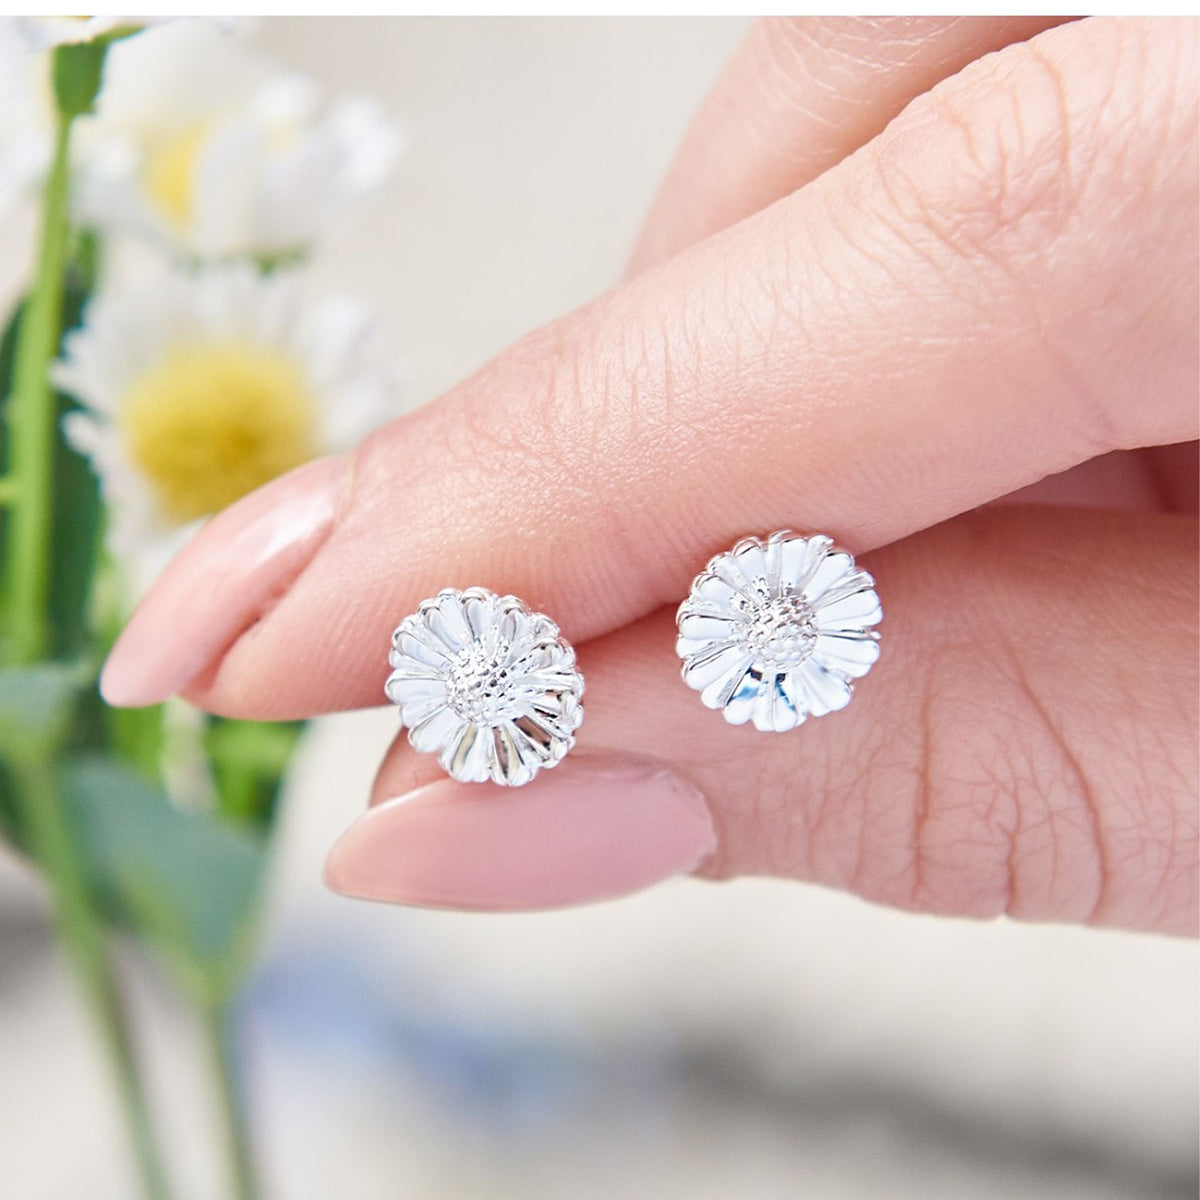 silver daisy stud earrings UK designer scarlett jewellery RHS Chelsea Flower Show